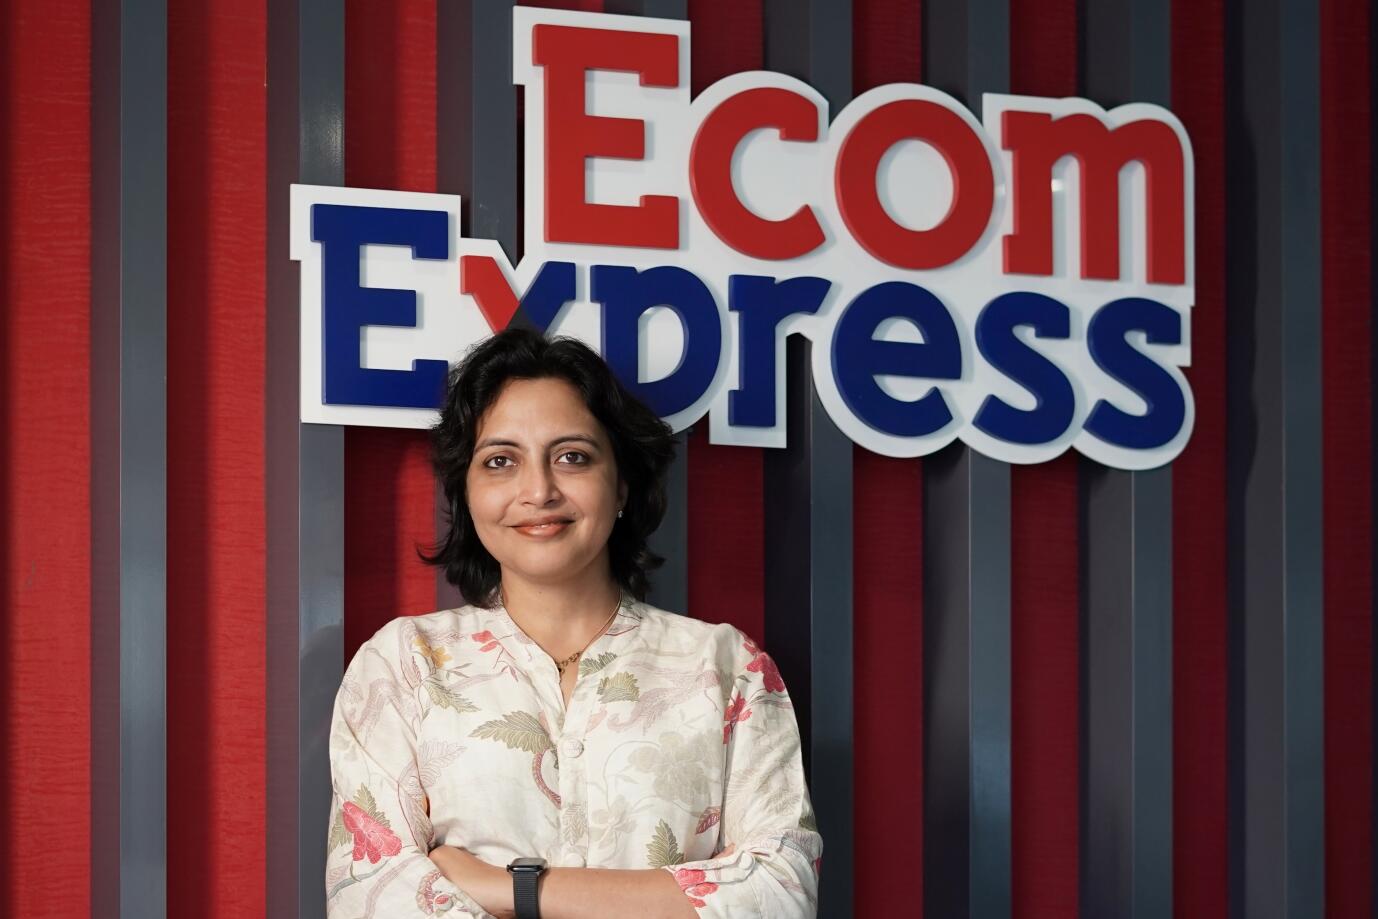 Ecom Express Strengthens its Leadership Team